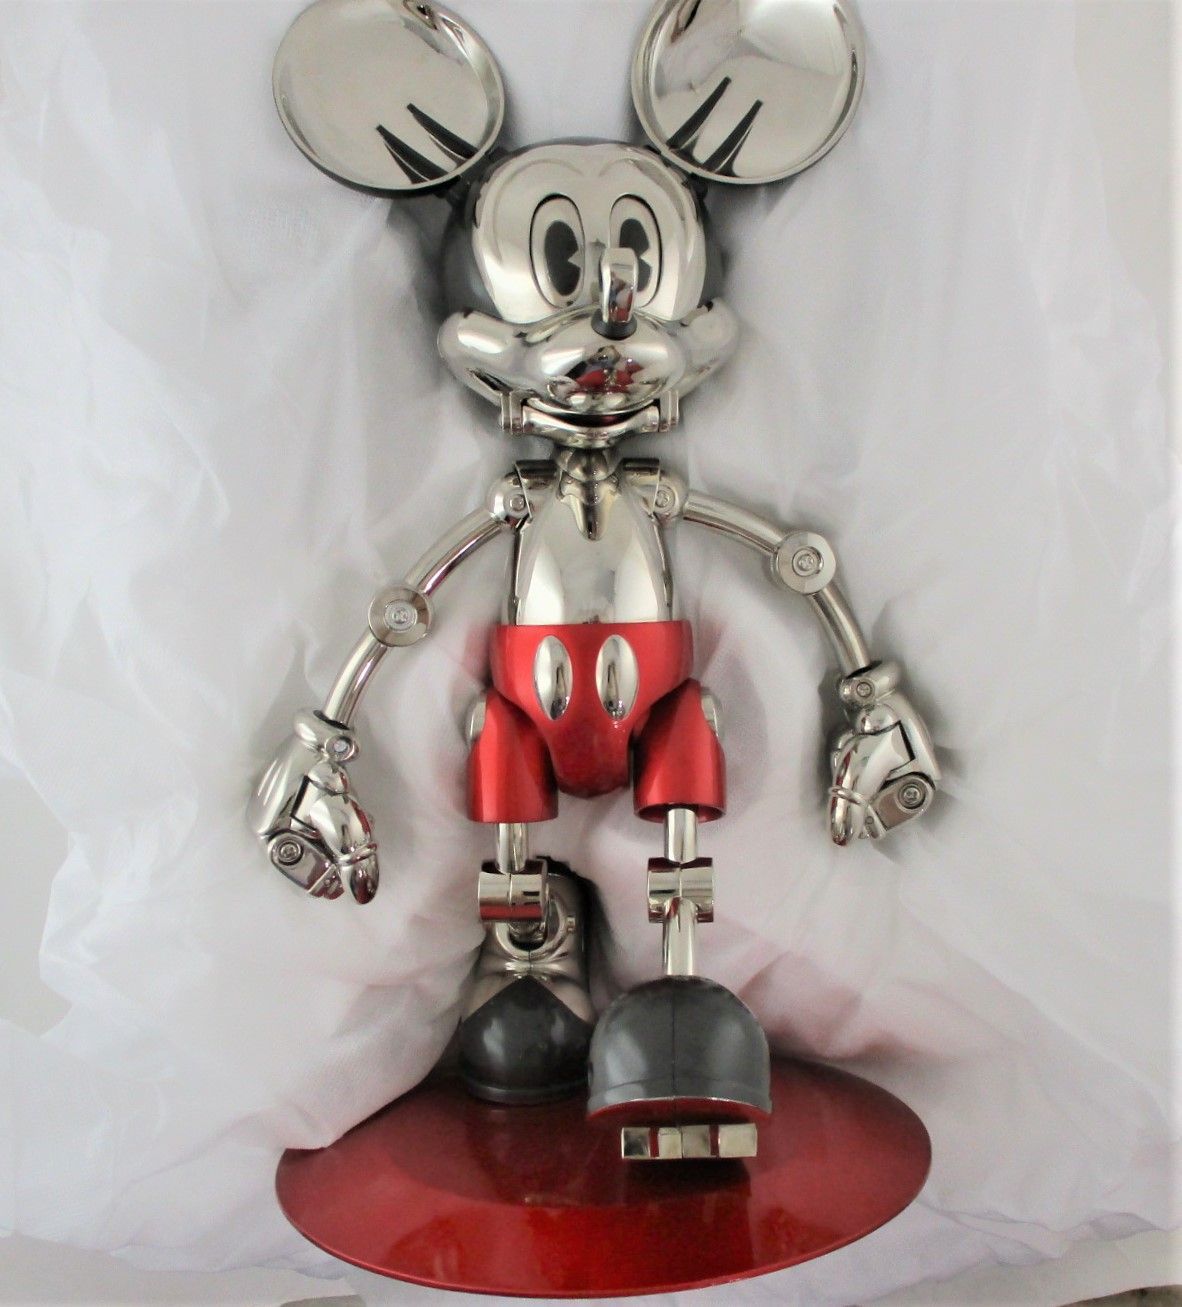 再入荷低価Dhyp フューチャー ミッキー カラー 空山基 FUTURE Mickey COLOR TOMY トミー Hajime Sorayama 1000体限定版 ミッキーマウス